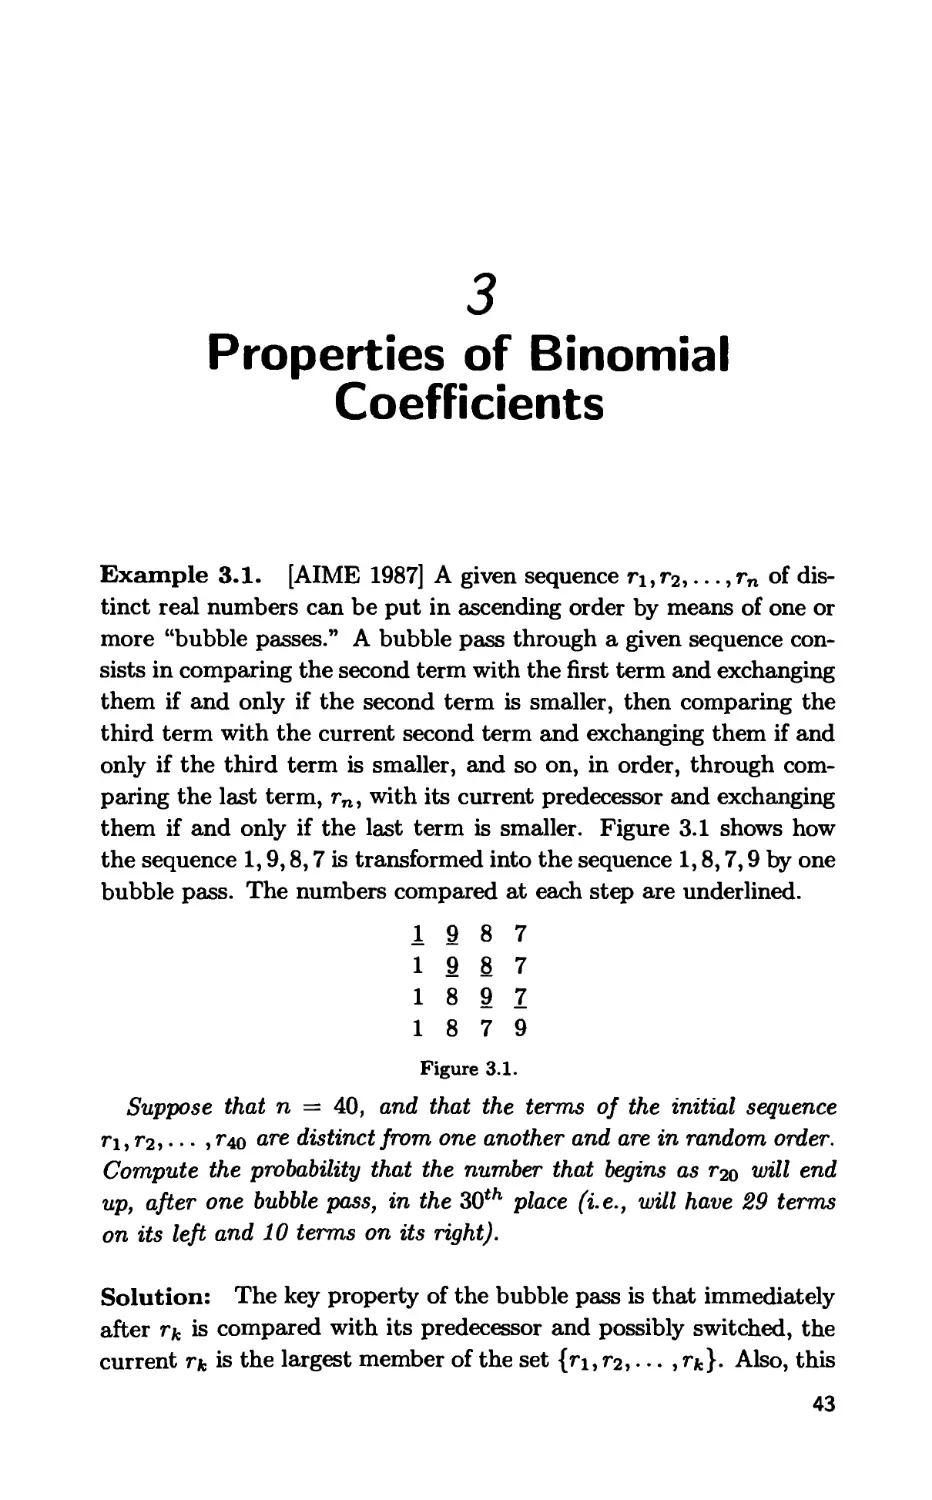 3. Properties of Binomial Coefficients